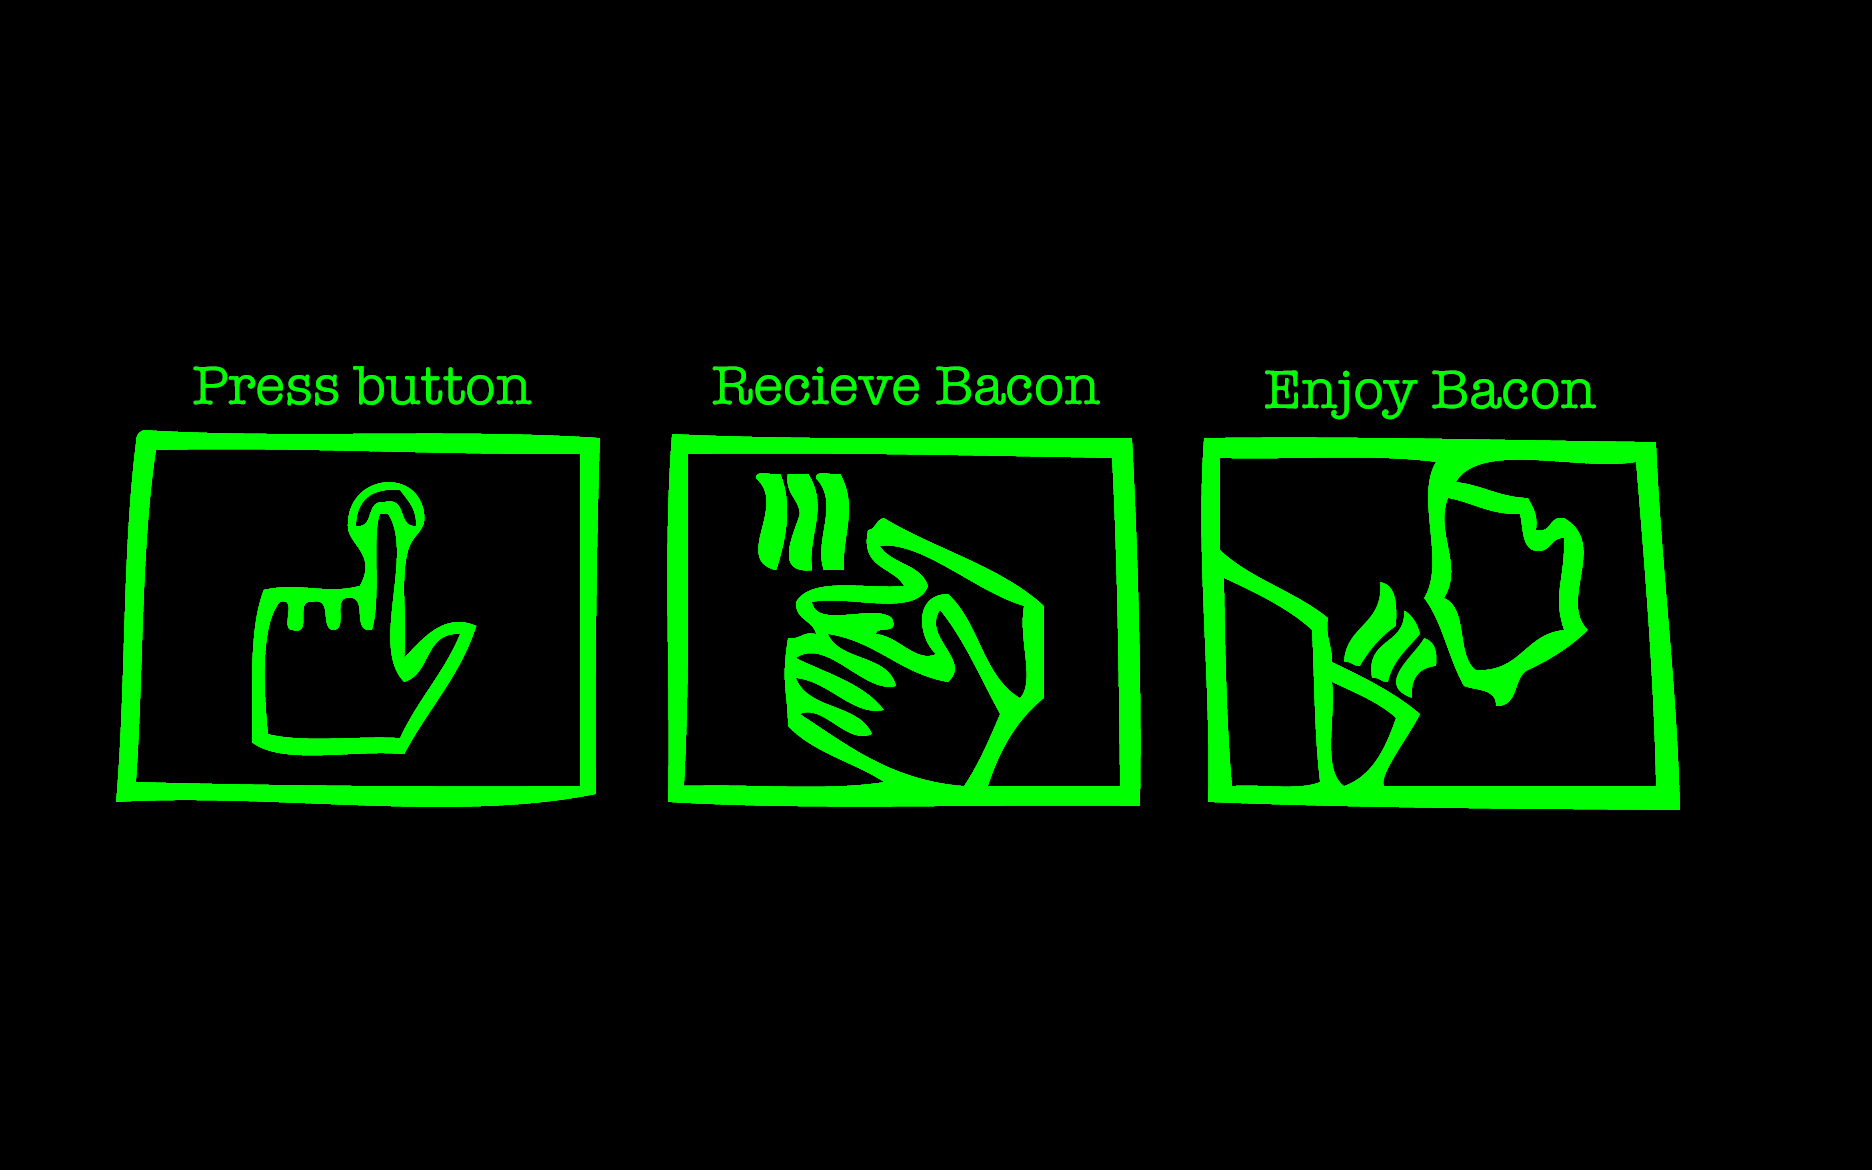 Push button, receive bacon, enjoy